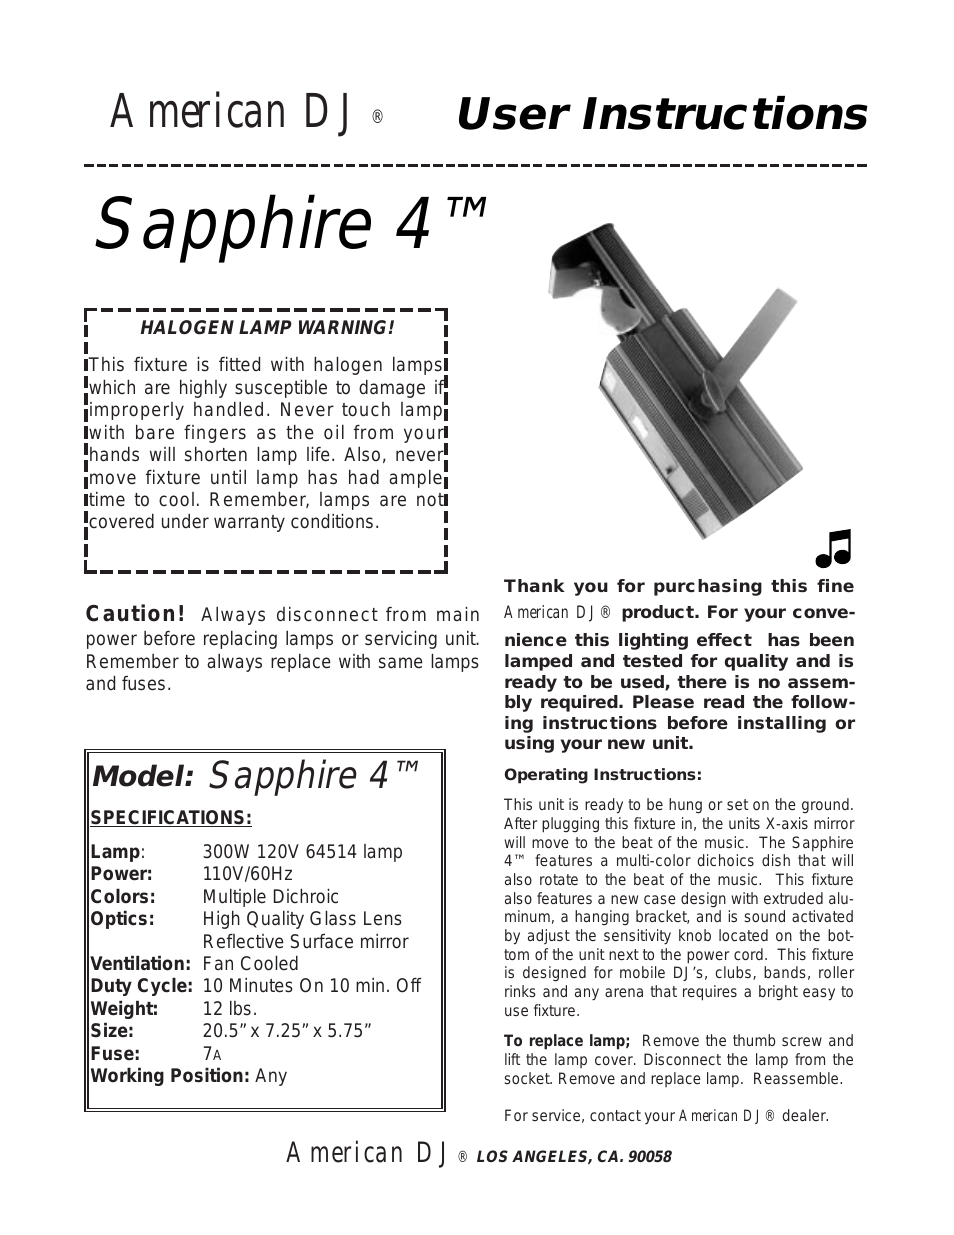 Sapphire 4